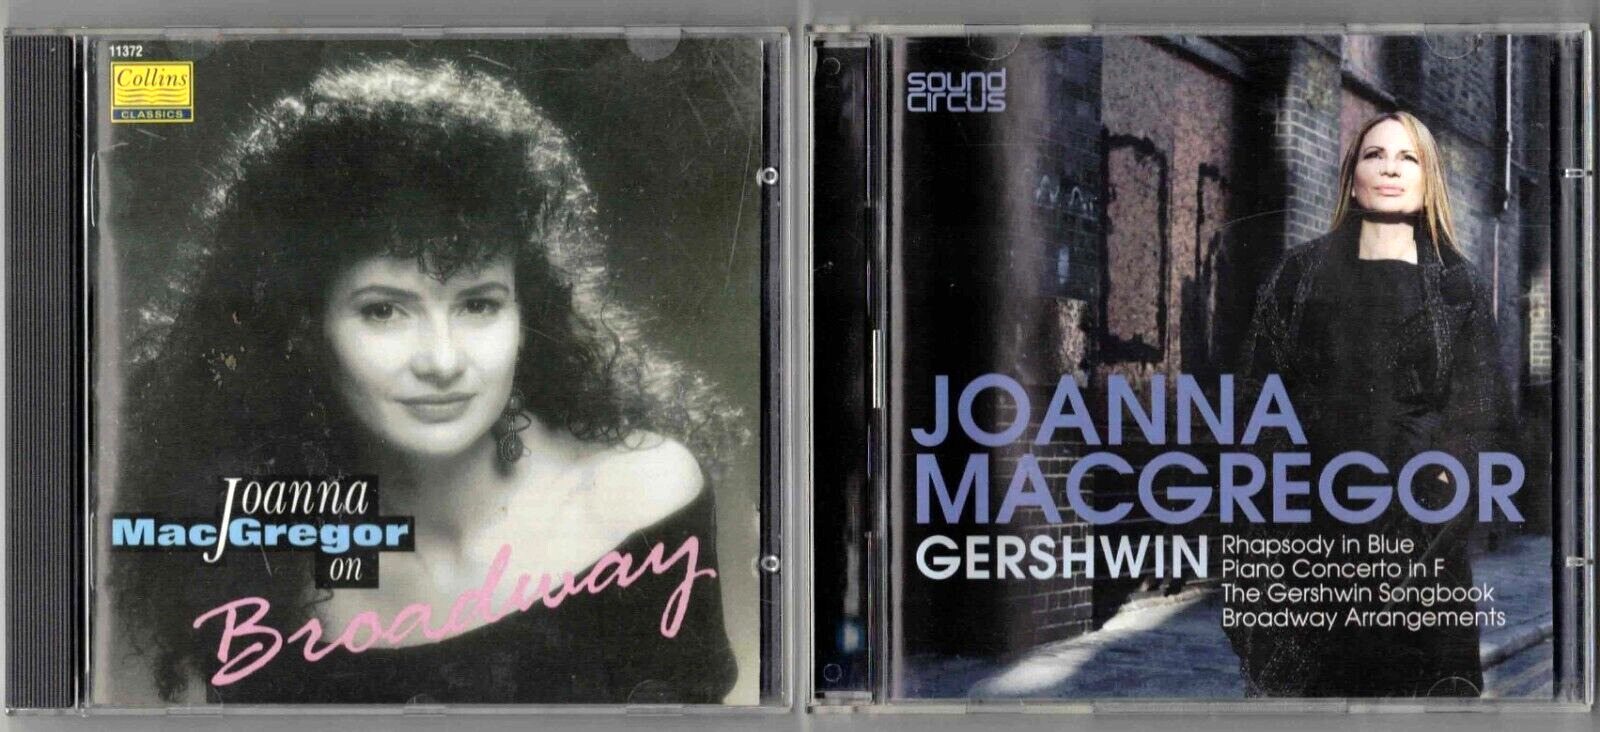 JOANNA MACGREGOR Gershwin Songbook & Arrangements (2CD) + On Broadway 2 CD LOT!